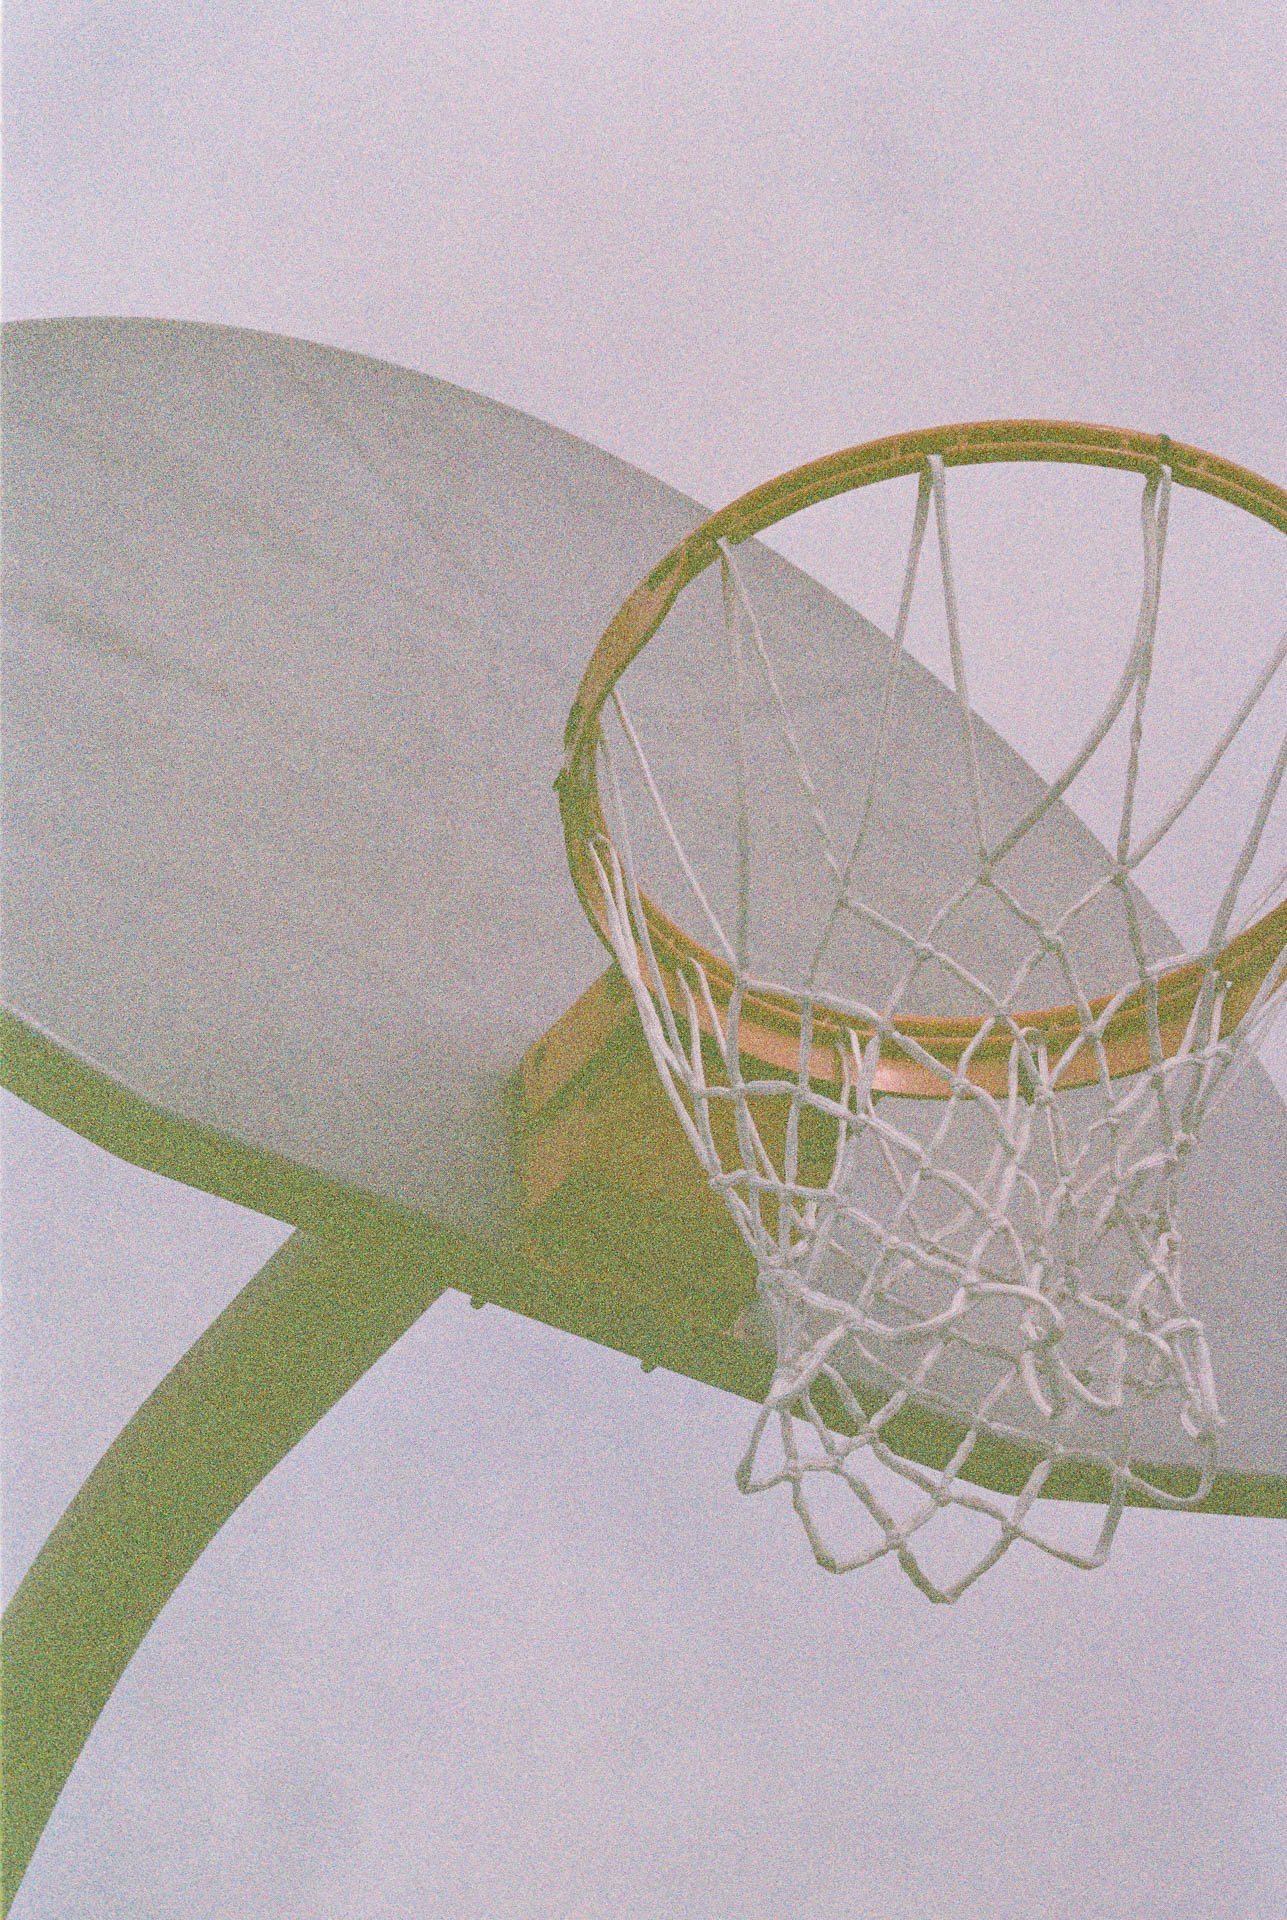 Basketball-Hoop-on-Film.jpg